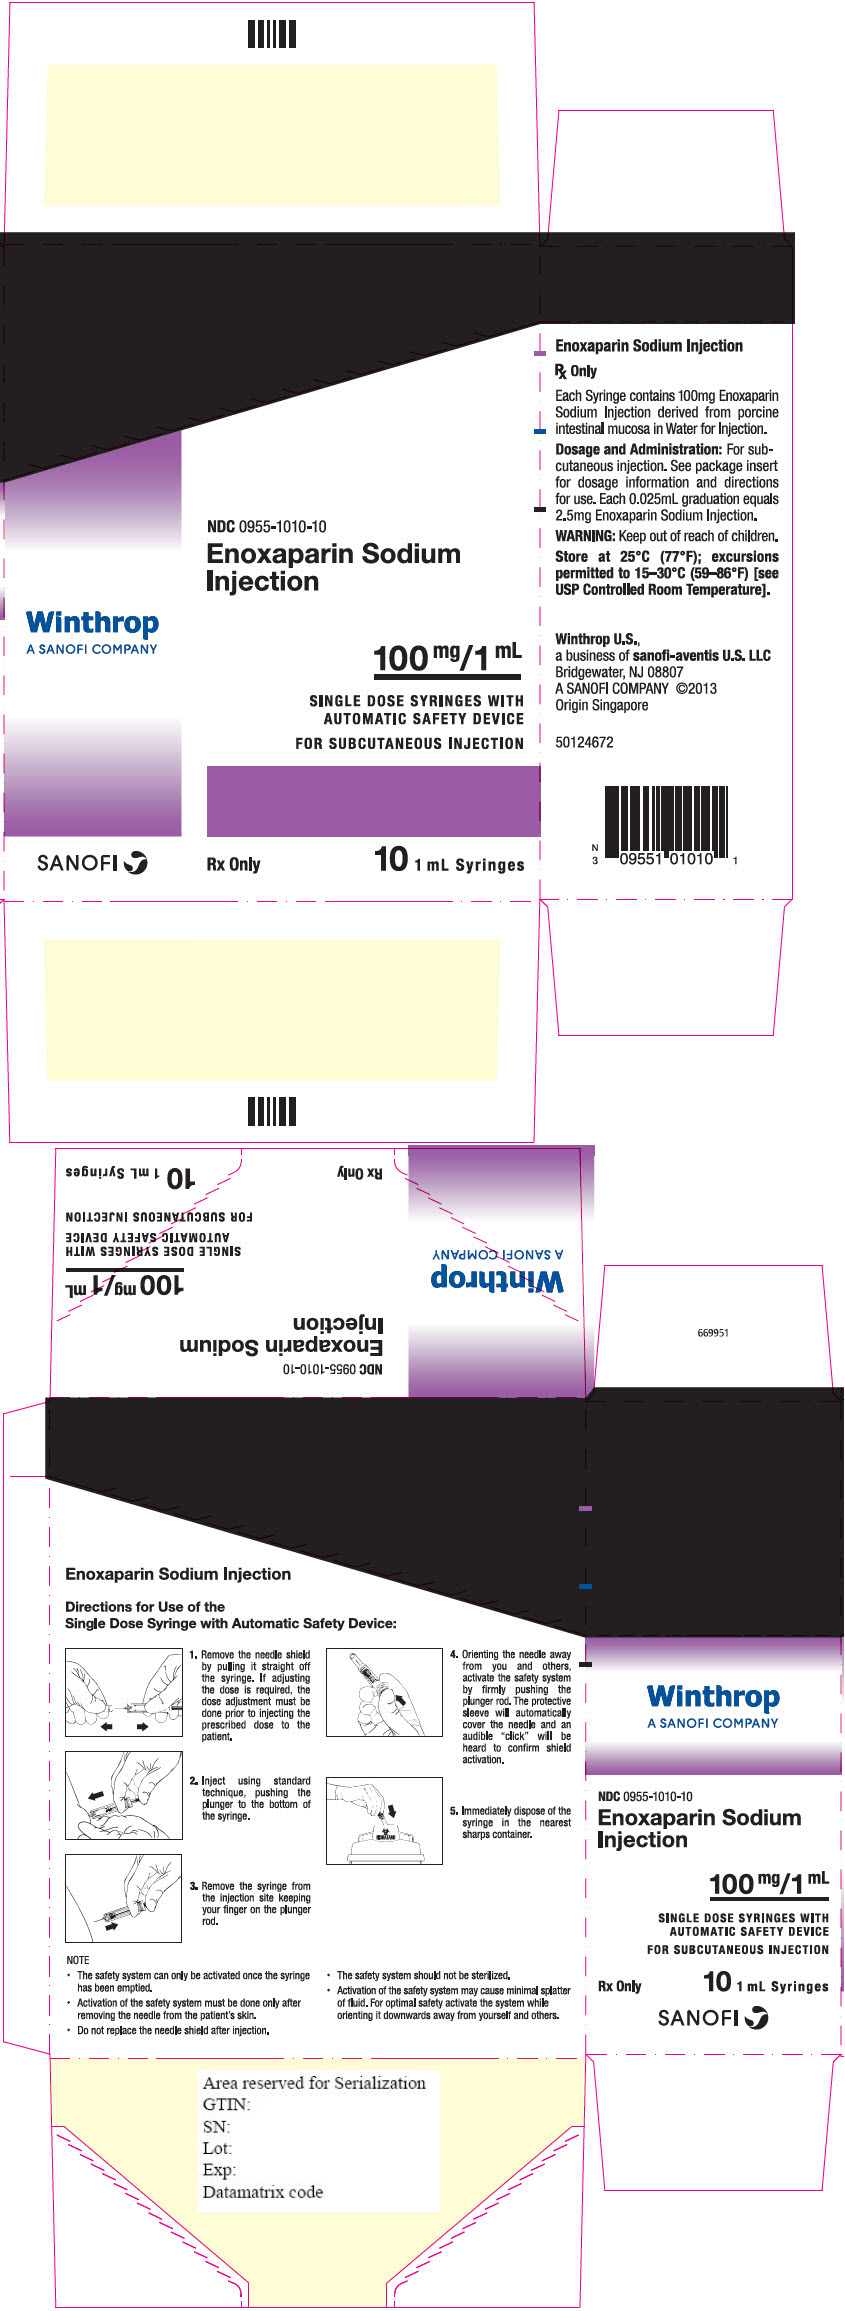 PRINCIPAL DISPLAY PANEL - 100 mg/1 mL Syringe Carton